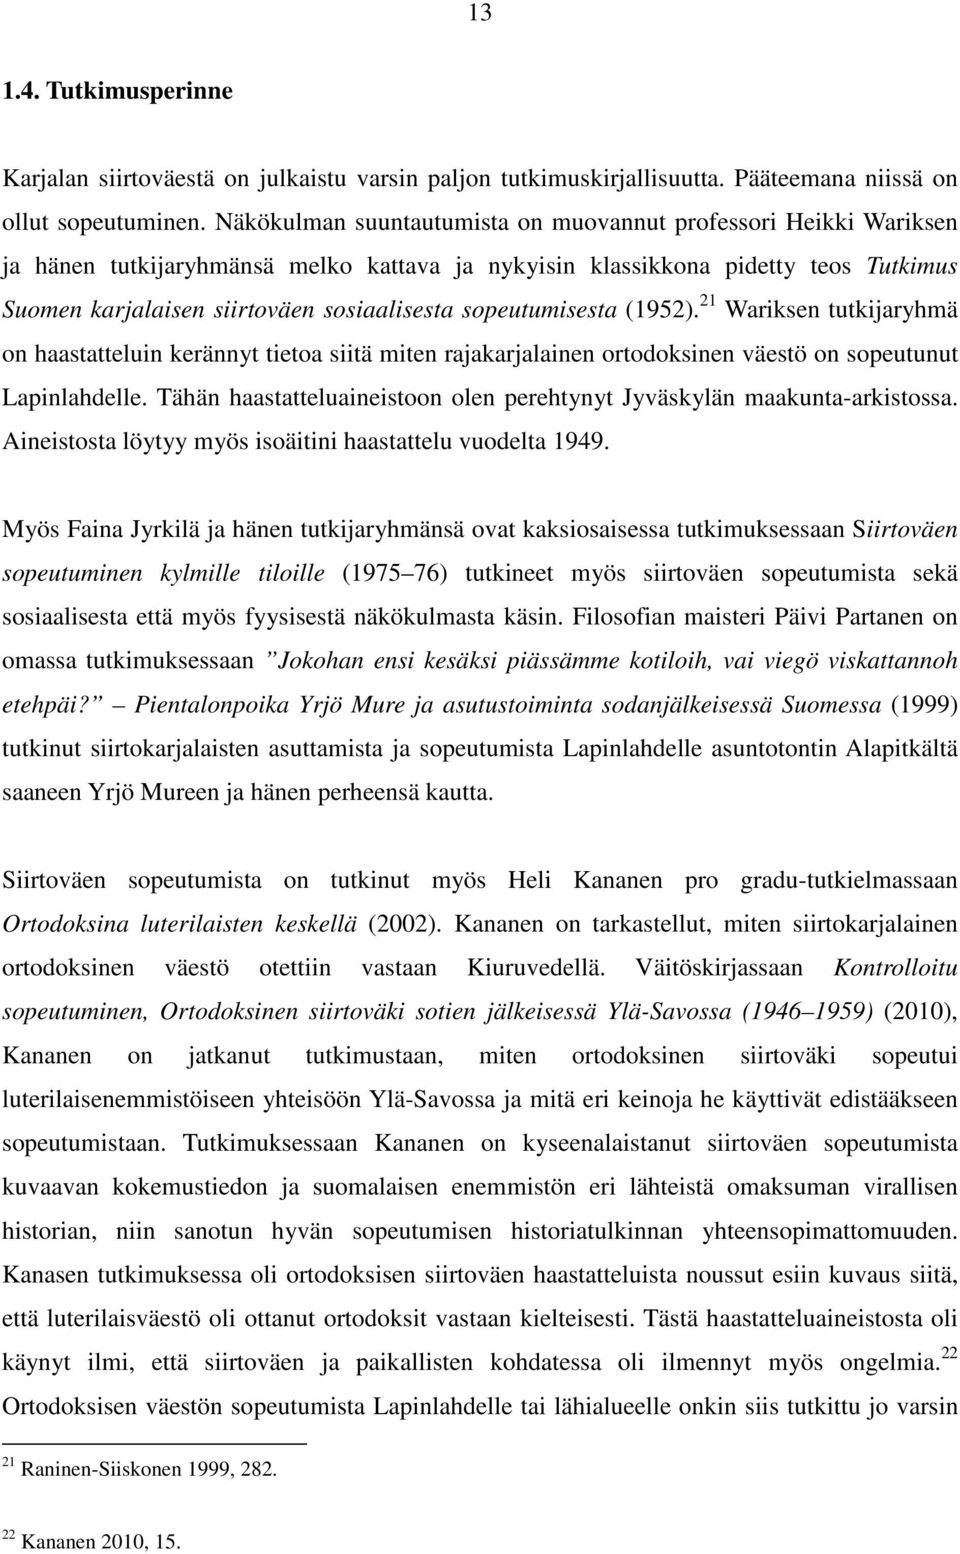 sopeutumisesta (1952). 21 Wariksen tutkijaryhmä on haastatteluin kerännyt tietoa siitä miten rajakarjalainen ortodoksinen väestö on sopeutunut Lapinlahdelle.